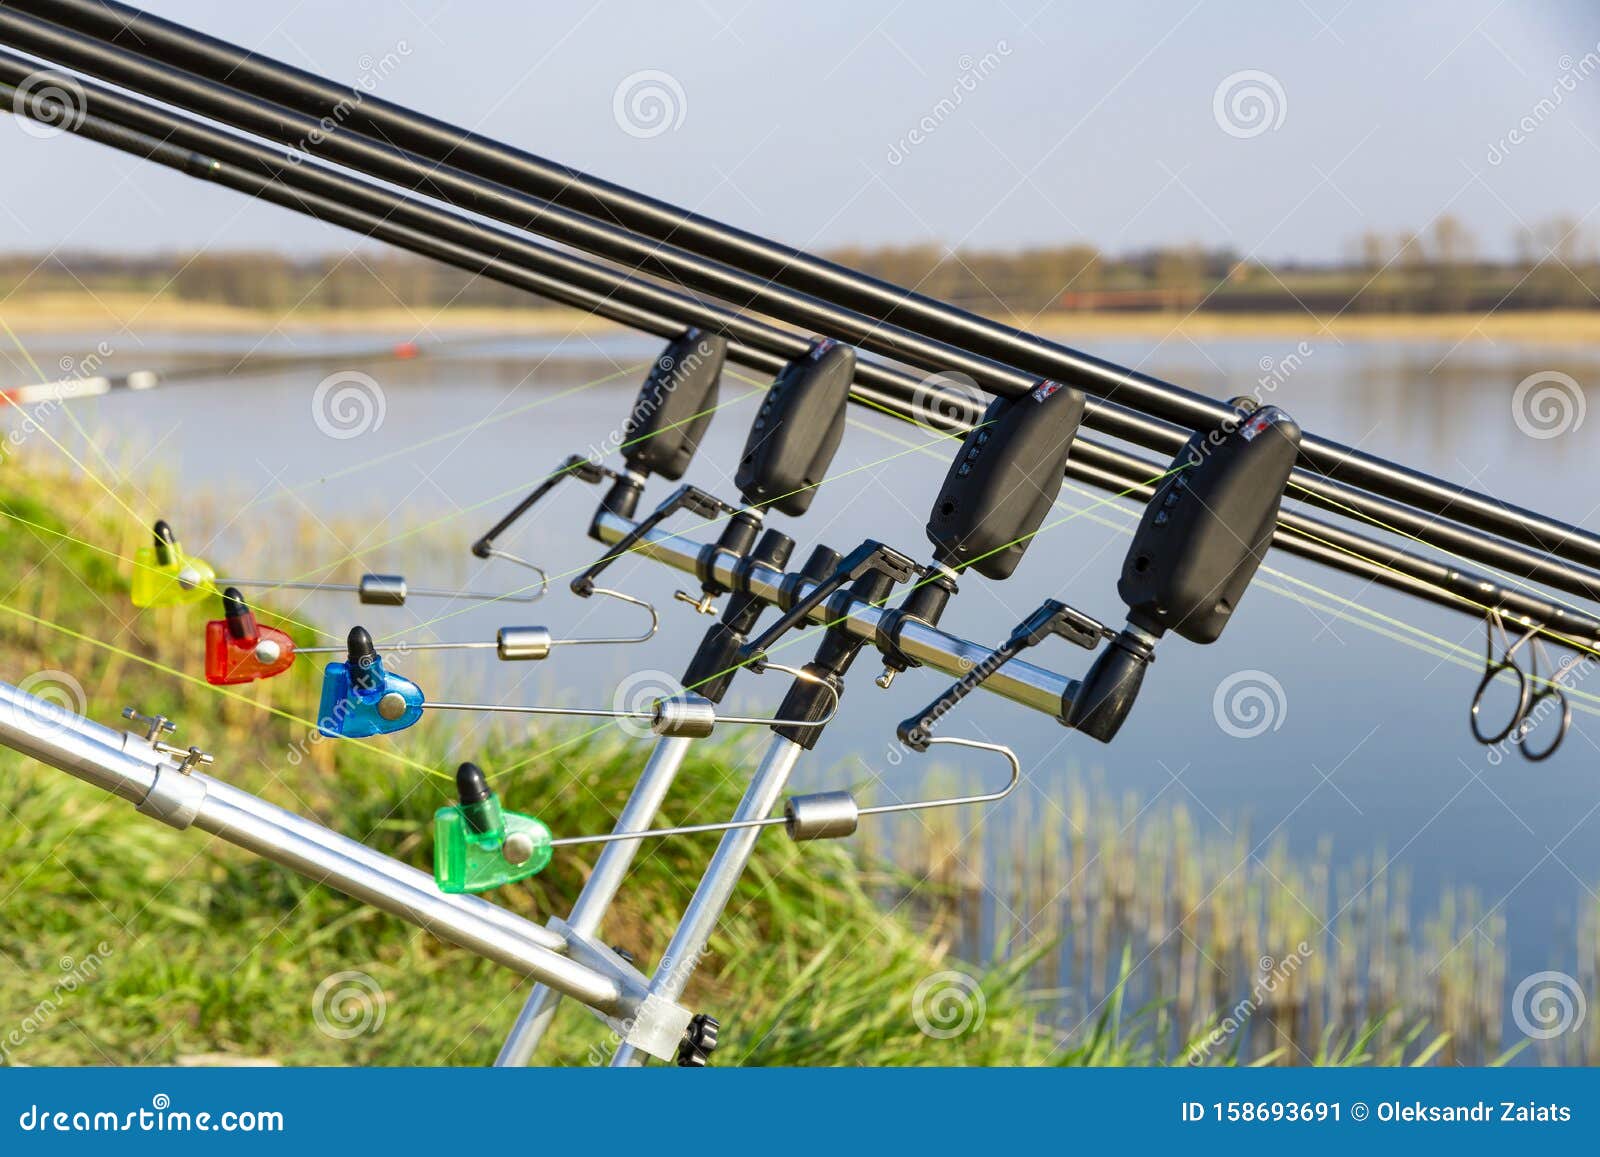 https://thumbs.dreamstime.com/z/carp-fishing-rods-carp-bite-indicators-set-up-rod-pod-near-lake-river-fishing-sunset-carp-fishing-rods-carp-158693691.jpg